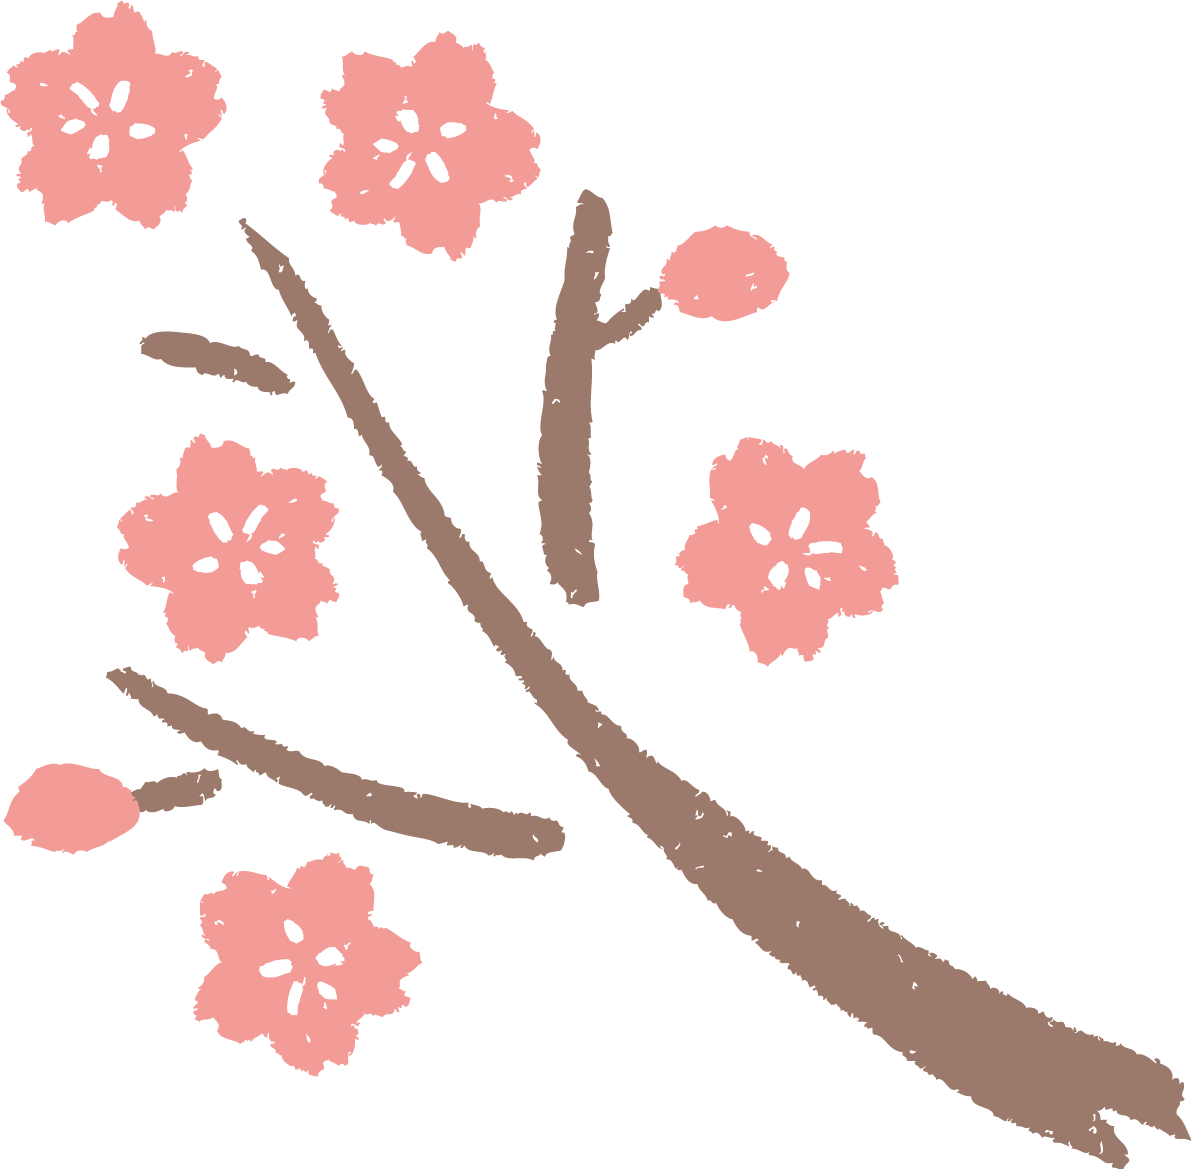 かわいい桜の枝 和風 筆 墨 桜 イラスト素材 超多くの無料かわいいイラスト素材